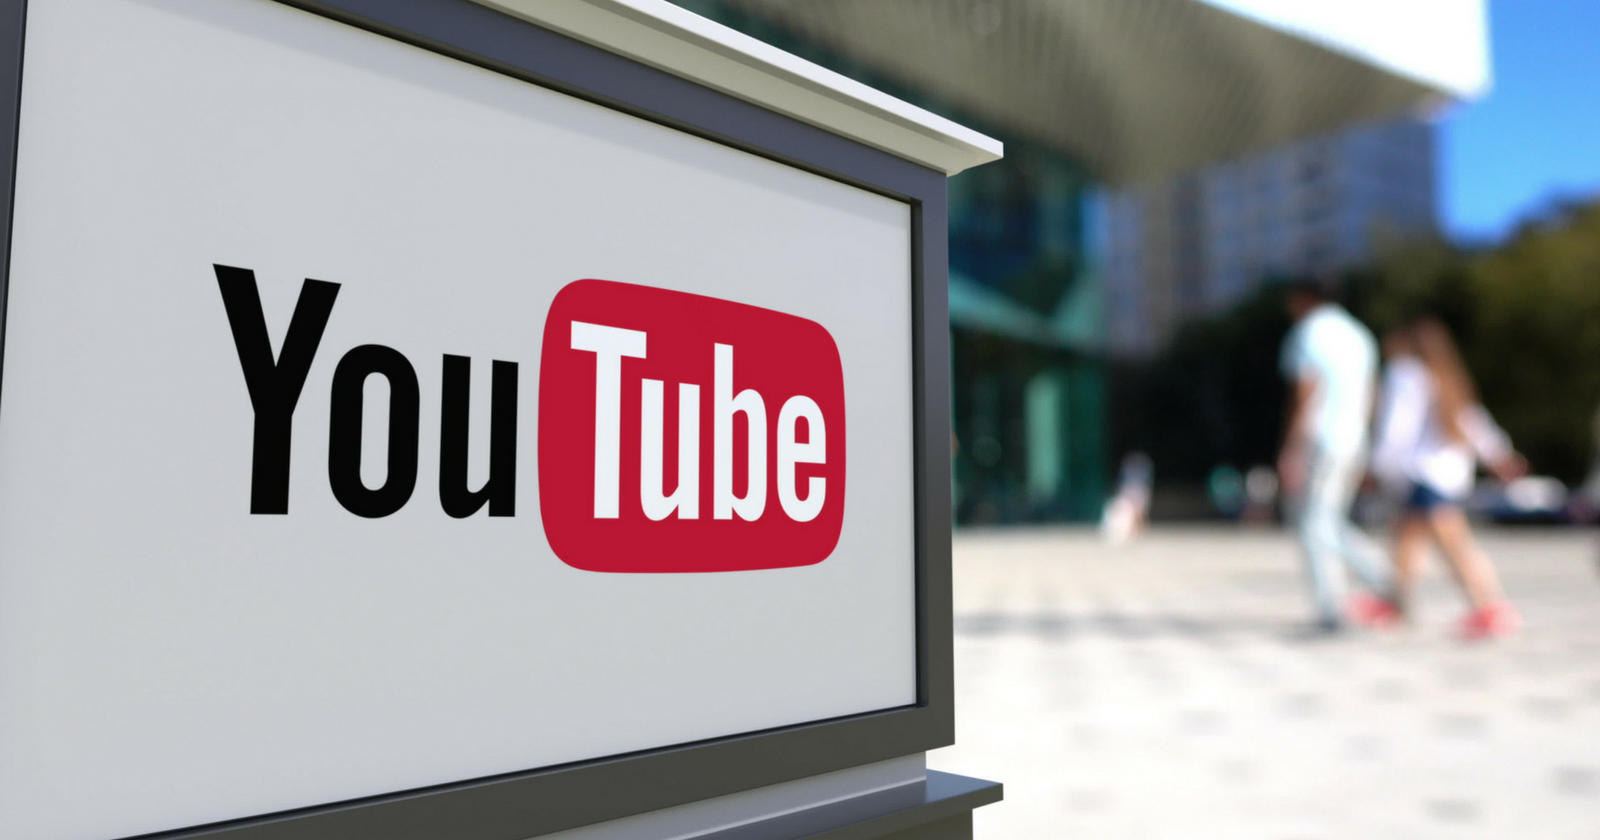 Hướng dẫn tạo kênh Youtube chất lượng cho doanh nghiệp (P2)